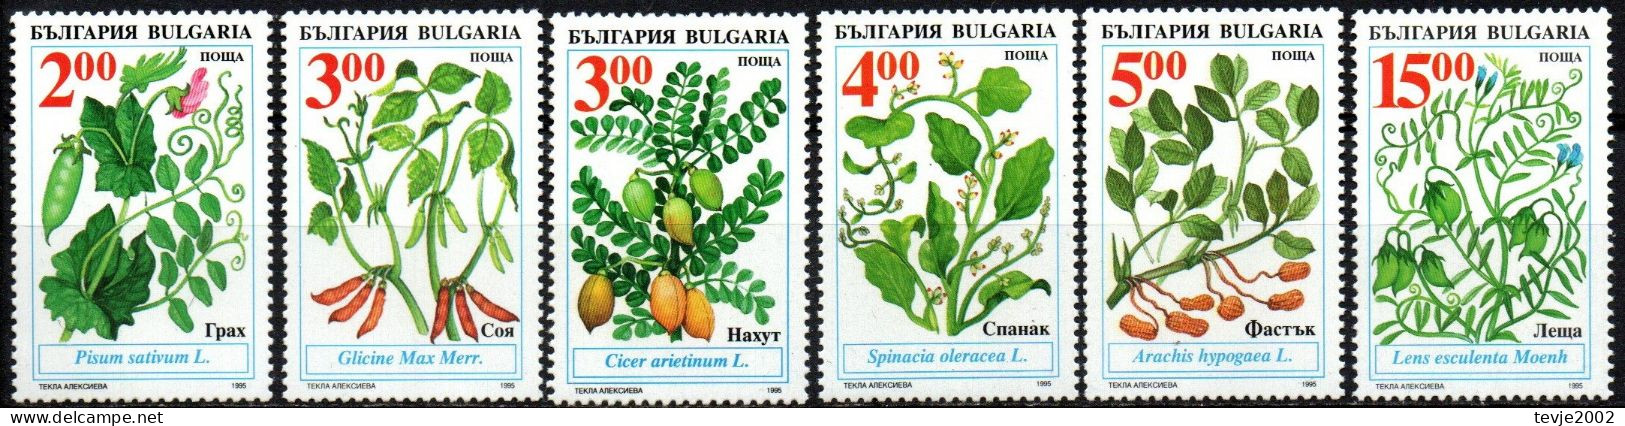 Bulgarien 1995 - Mi.Nr. 4168 - 4173 - Postfrisch MNH - Pflanzen Plants Gemüse Crops - Legumbres